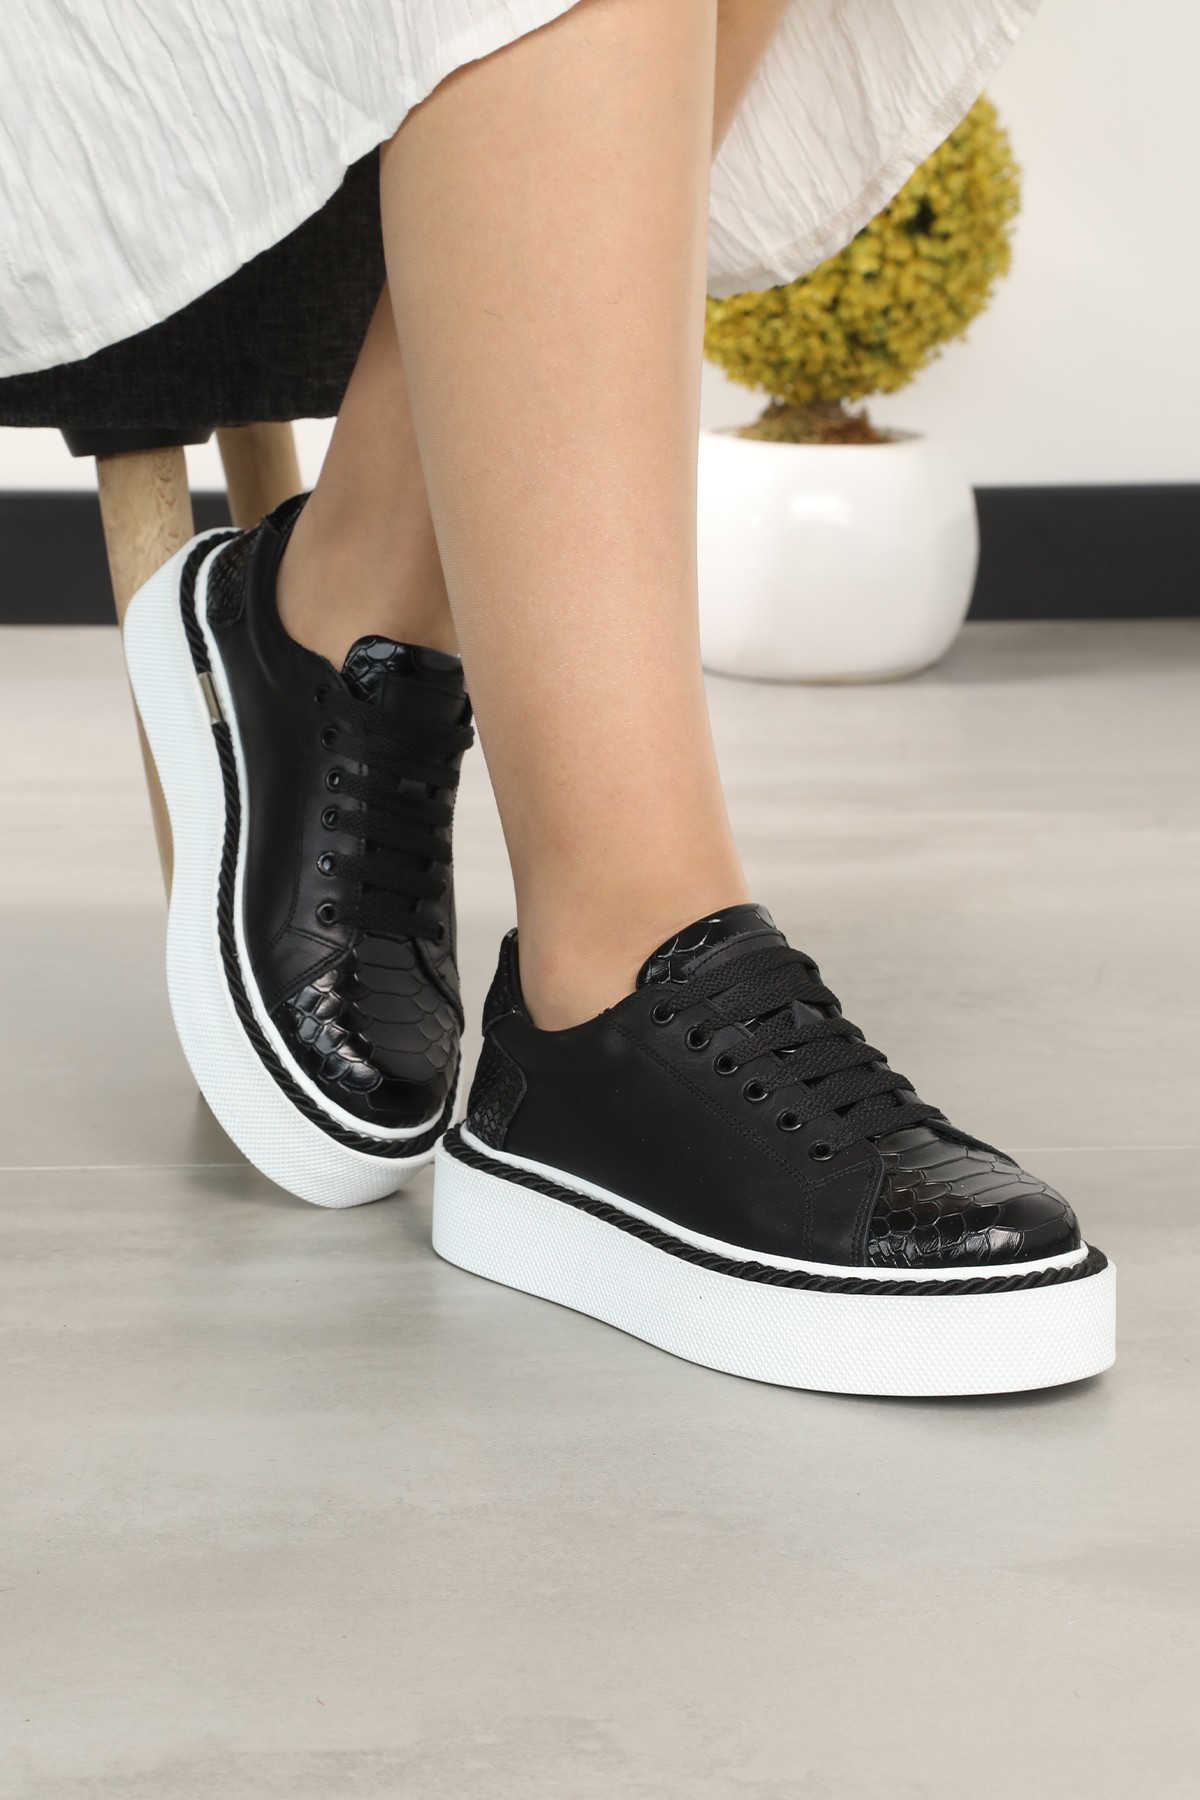 Cooliza Hakiki Deri Sneaker Yüksek Taban Rahat Günlük Kadın Spor Ayakkabı  - Siyah